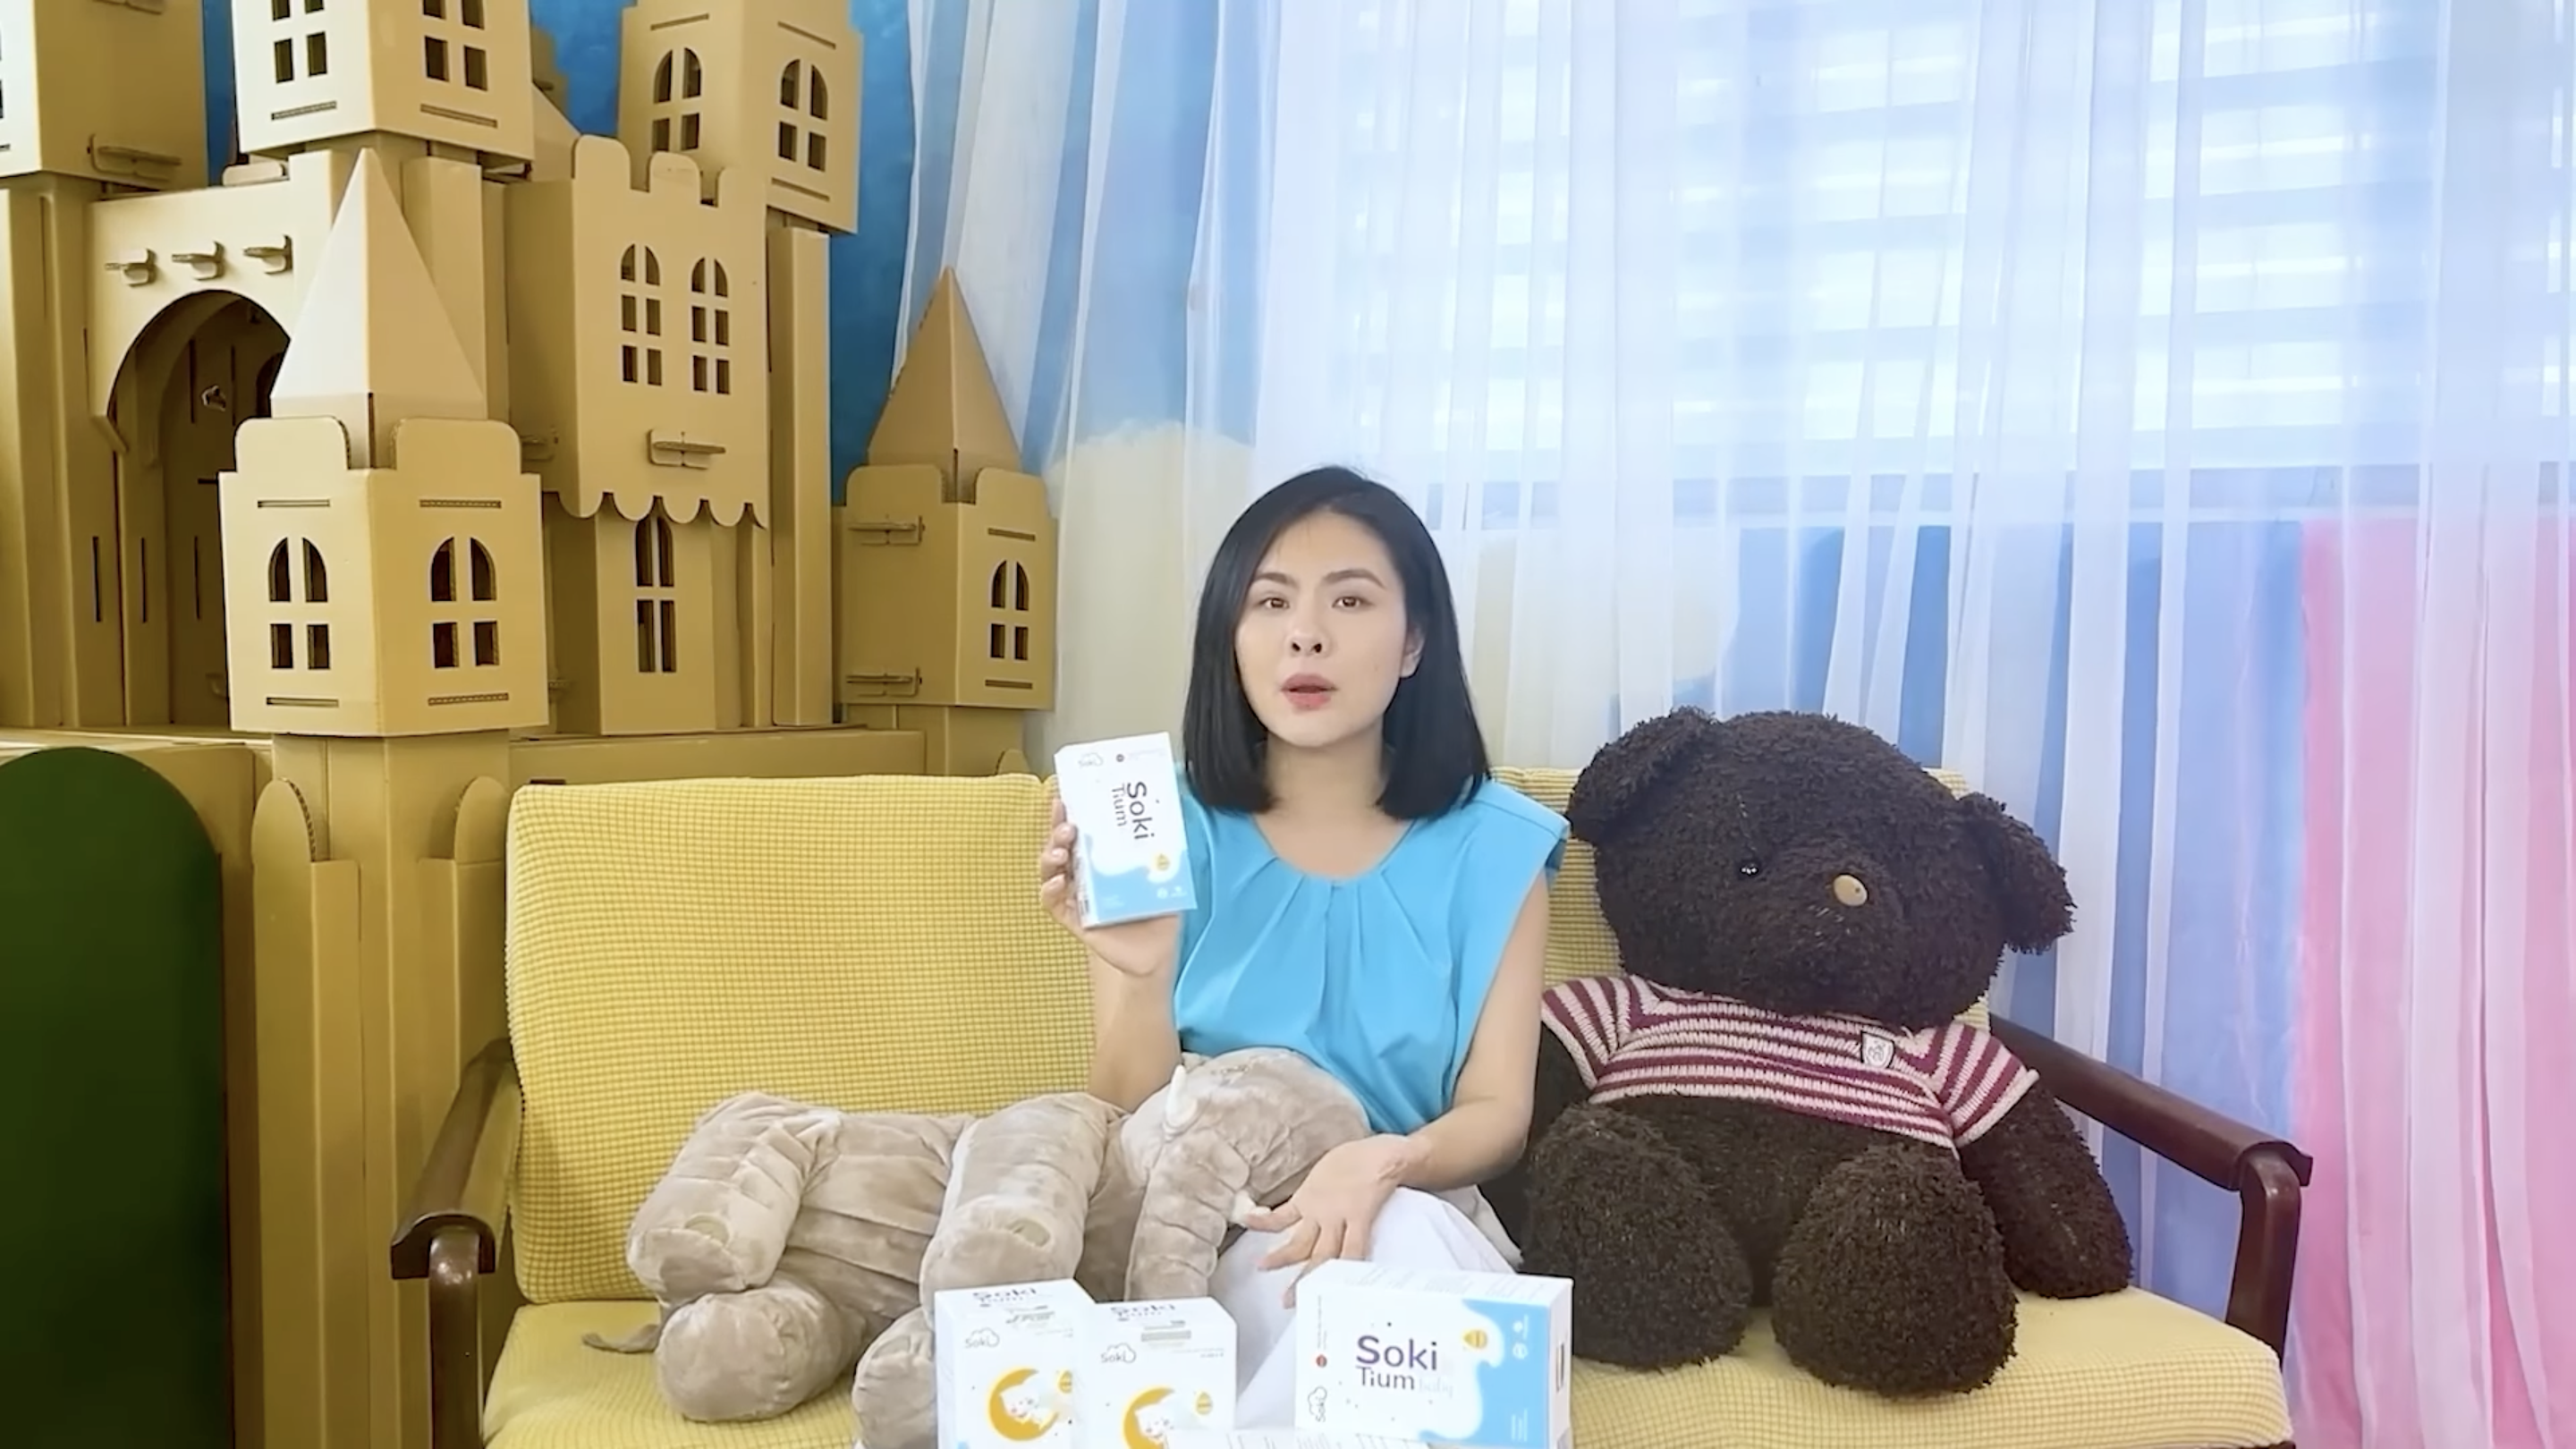 Soki Tium Baby - Sản phẩm giúp trẻ giảm quấy khóc đêm tại Bibomart có tốt không?